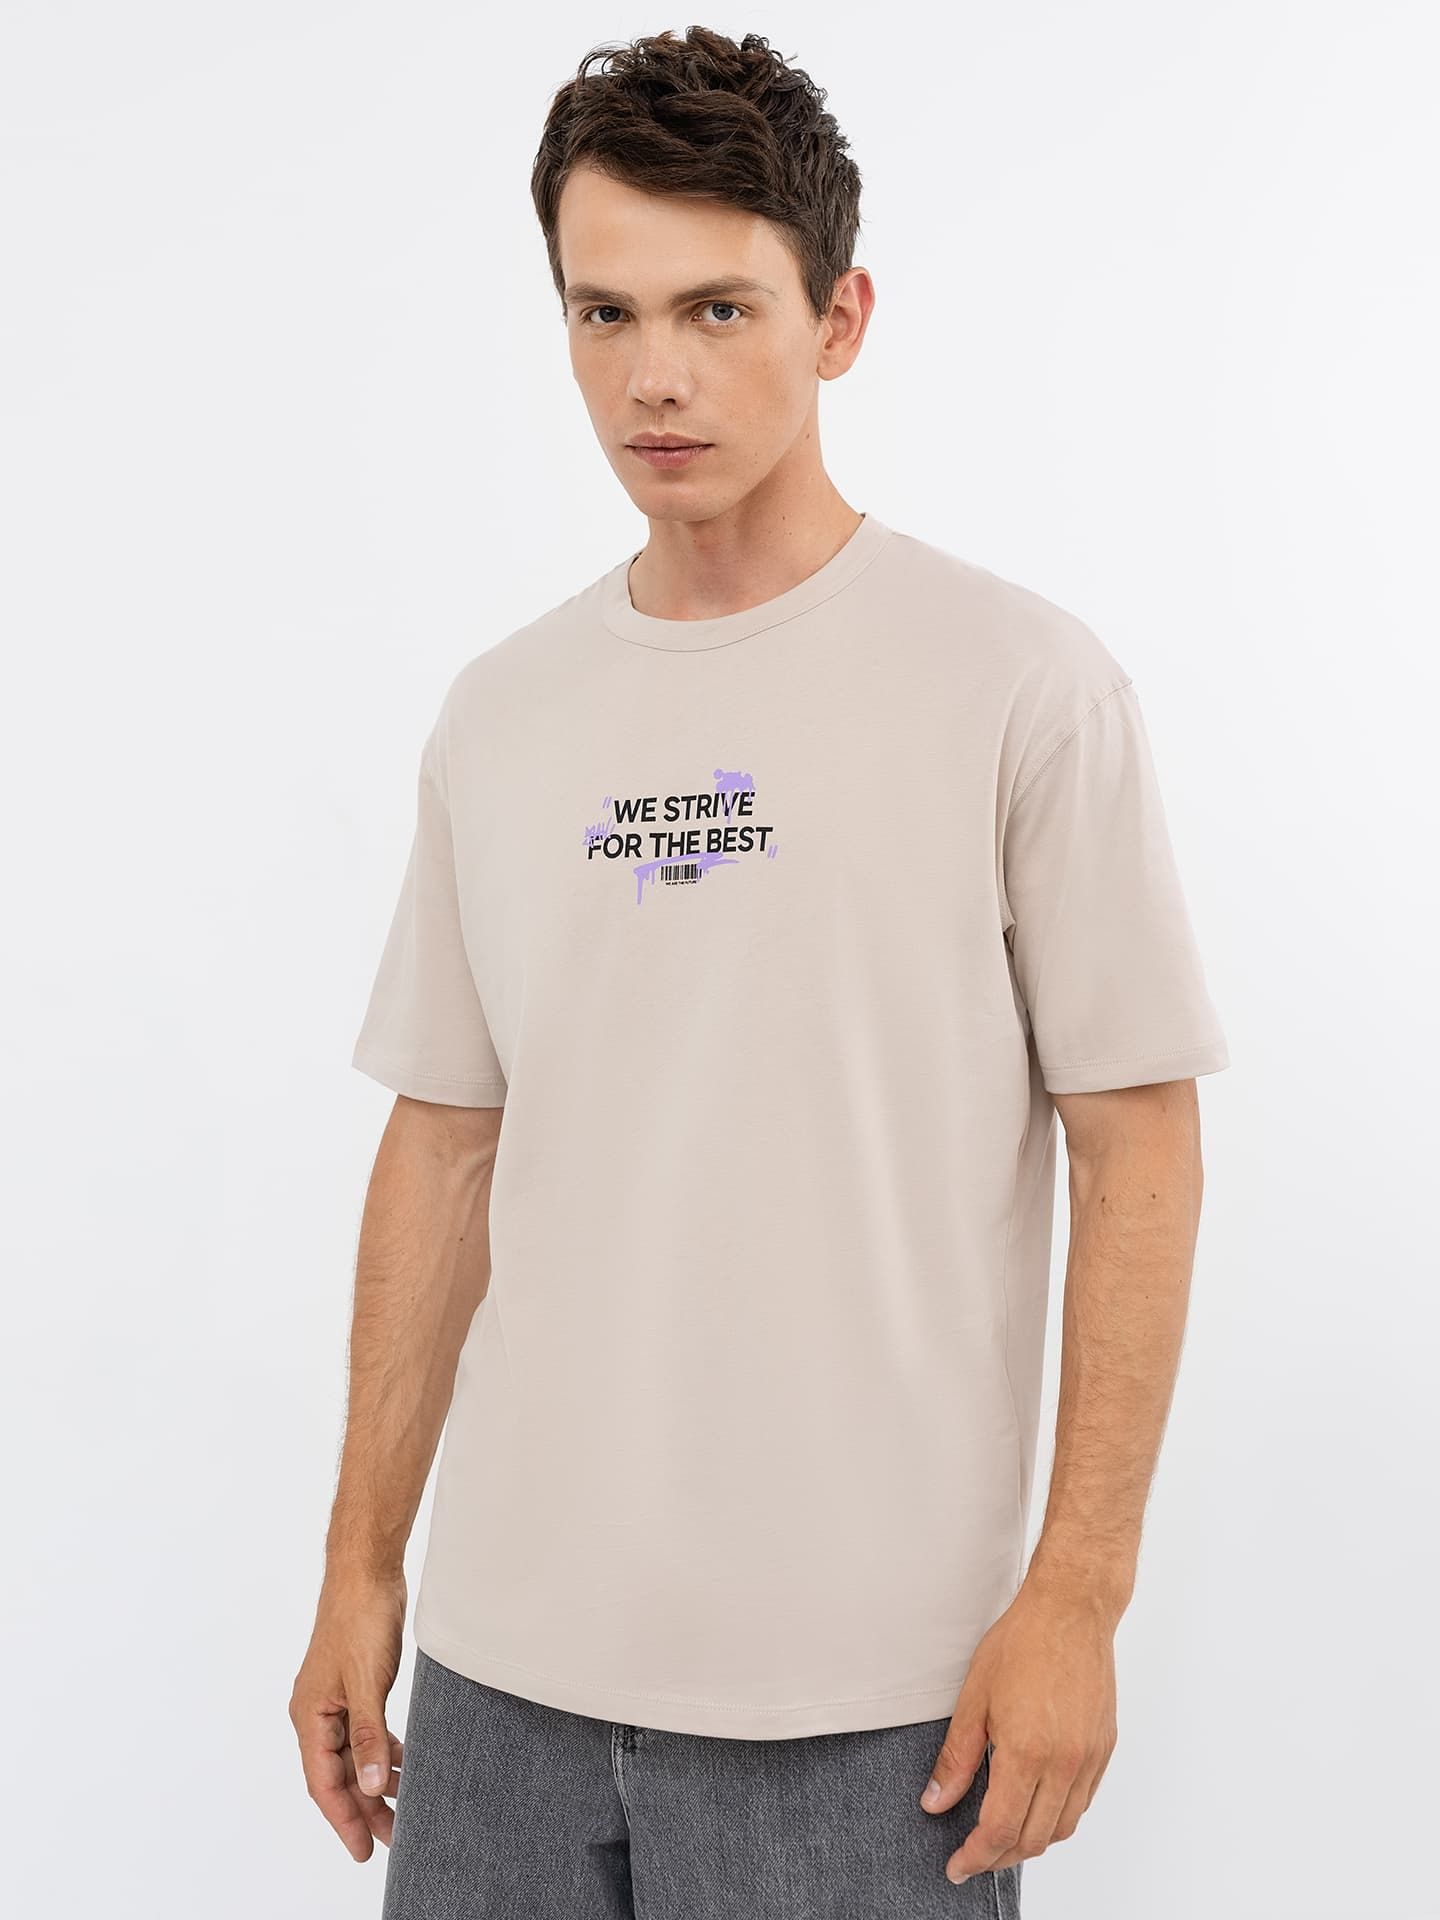 Хлопковая футболка кофейного цвета с лаконичным принтом